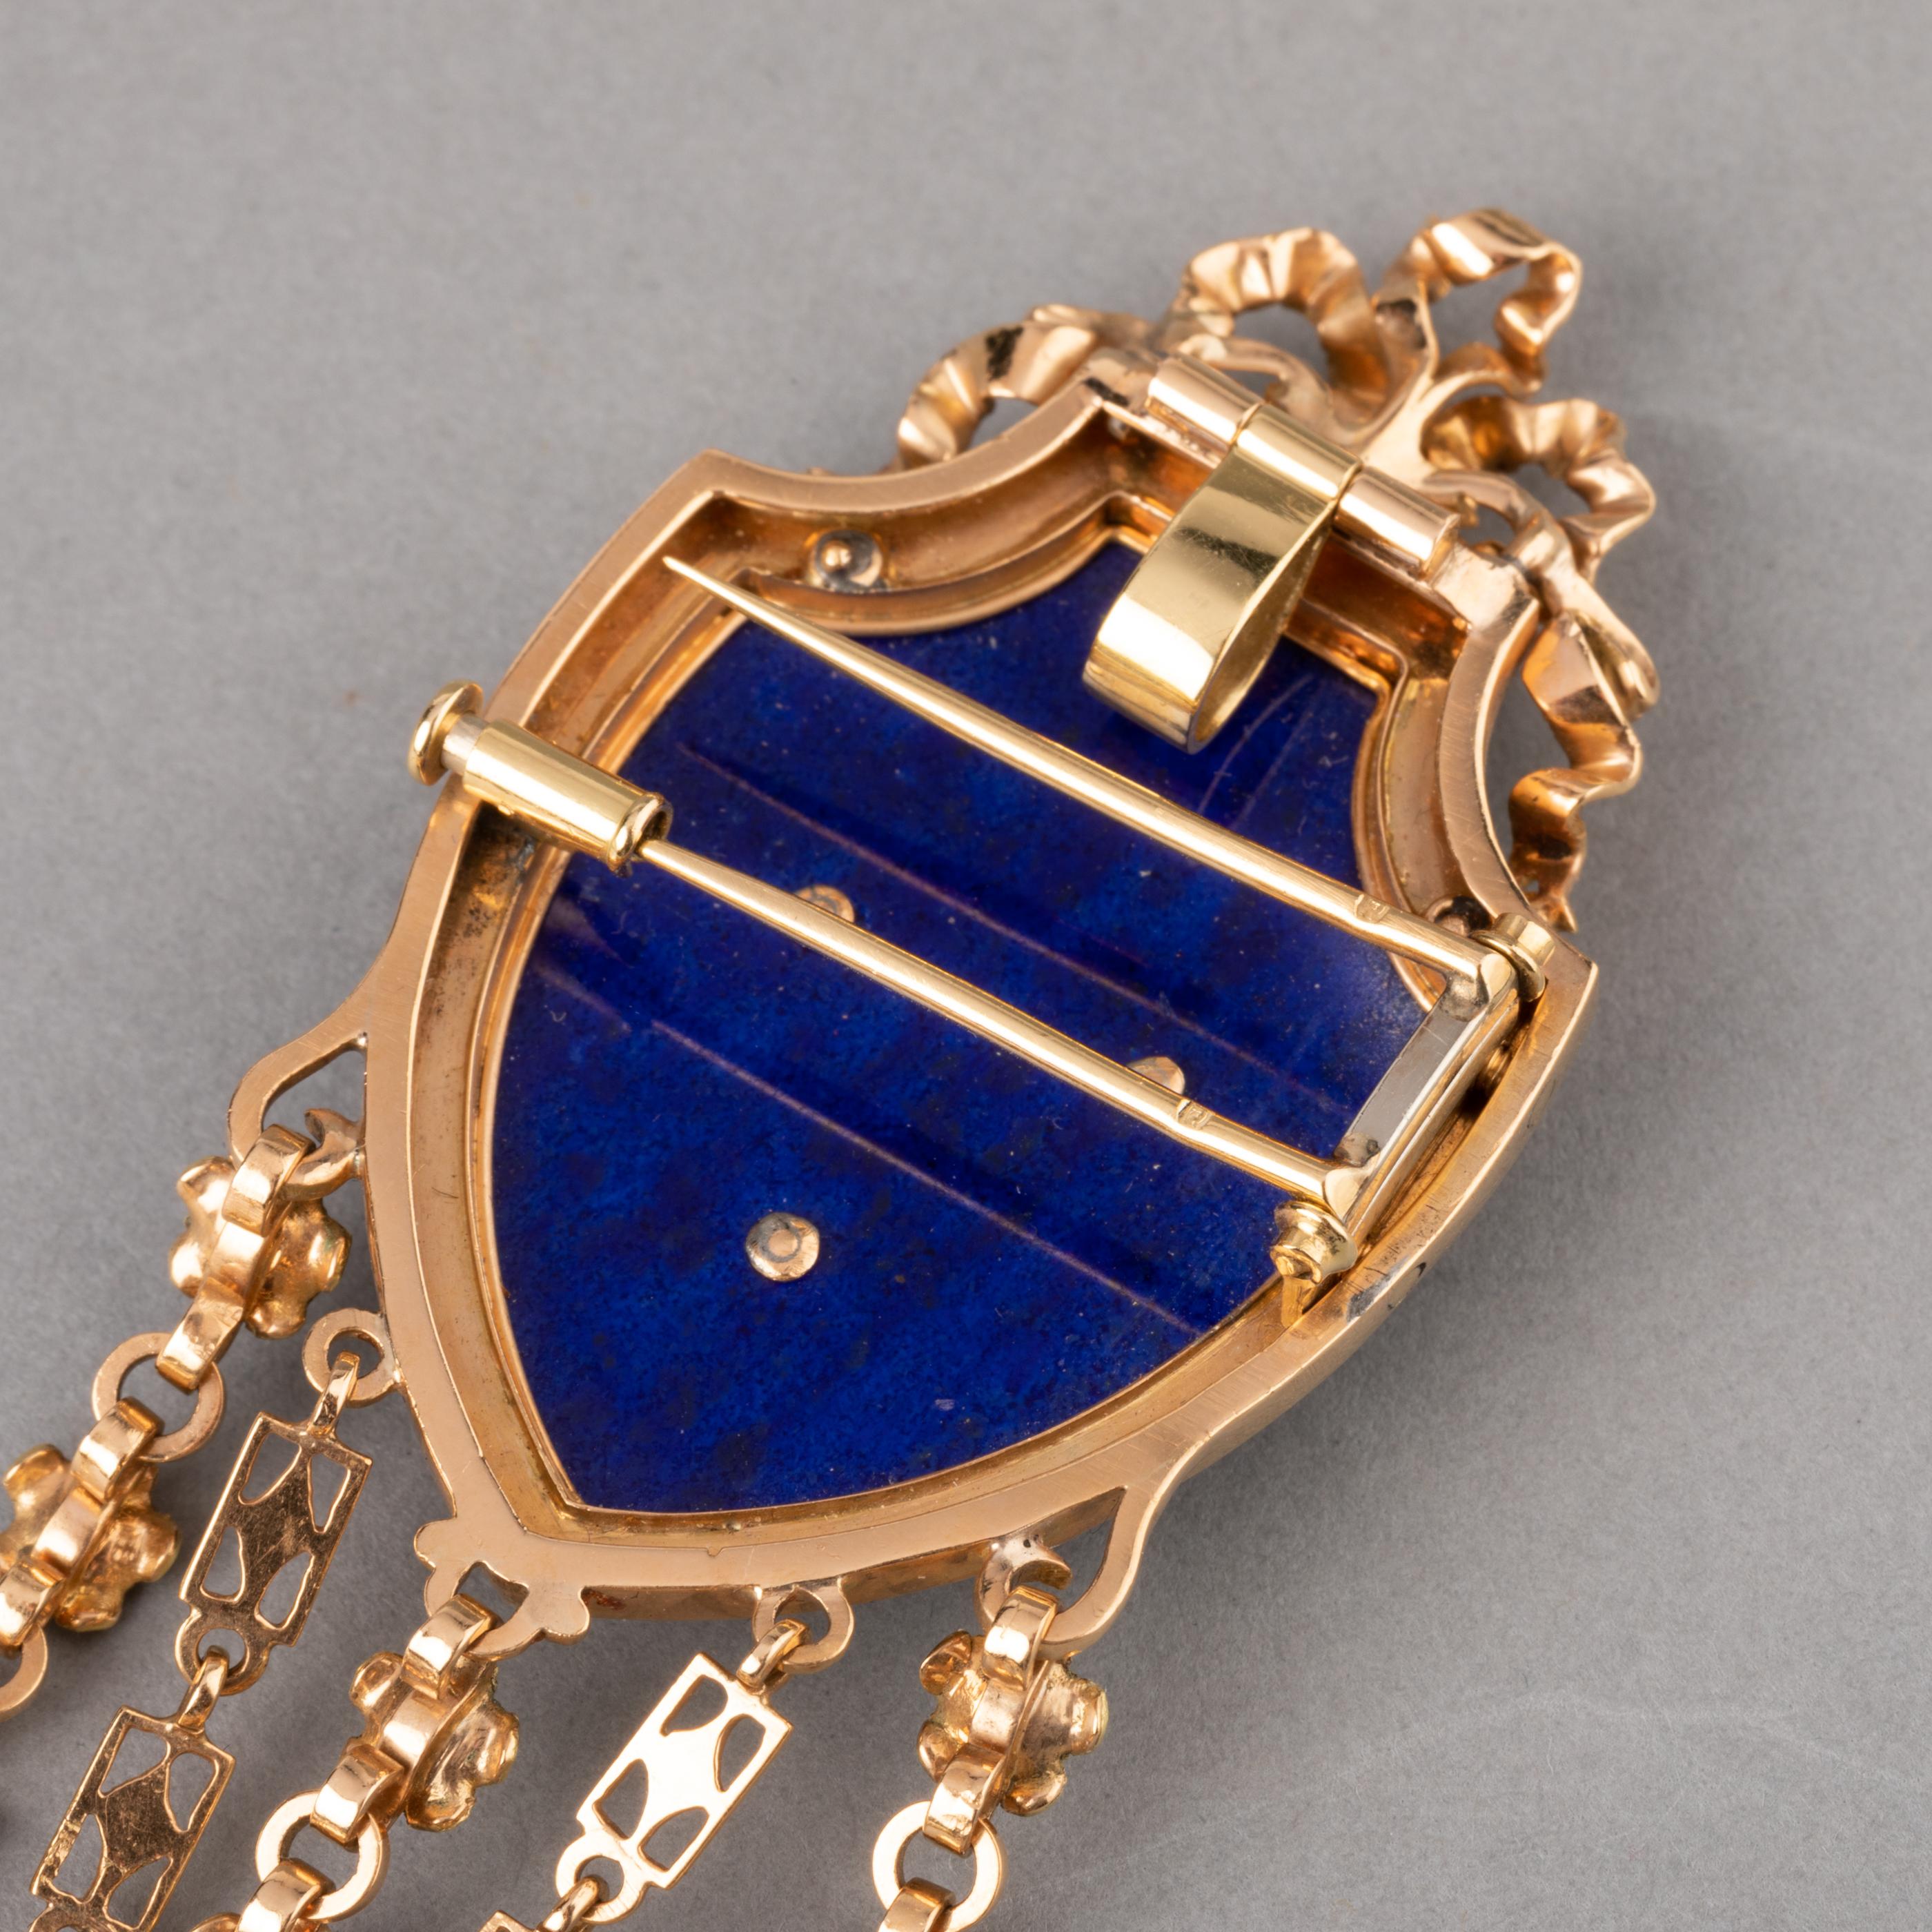 Gold and Lapis Lazuli Antique Châtelaine Brooch by Le Roy & Fils Paris 7